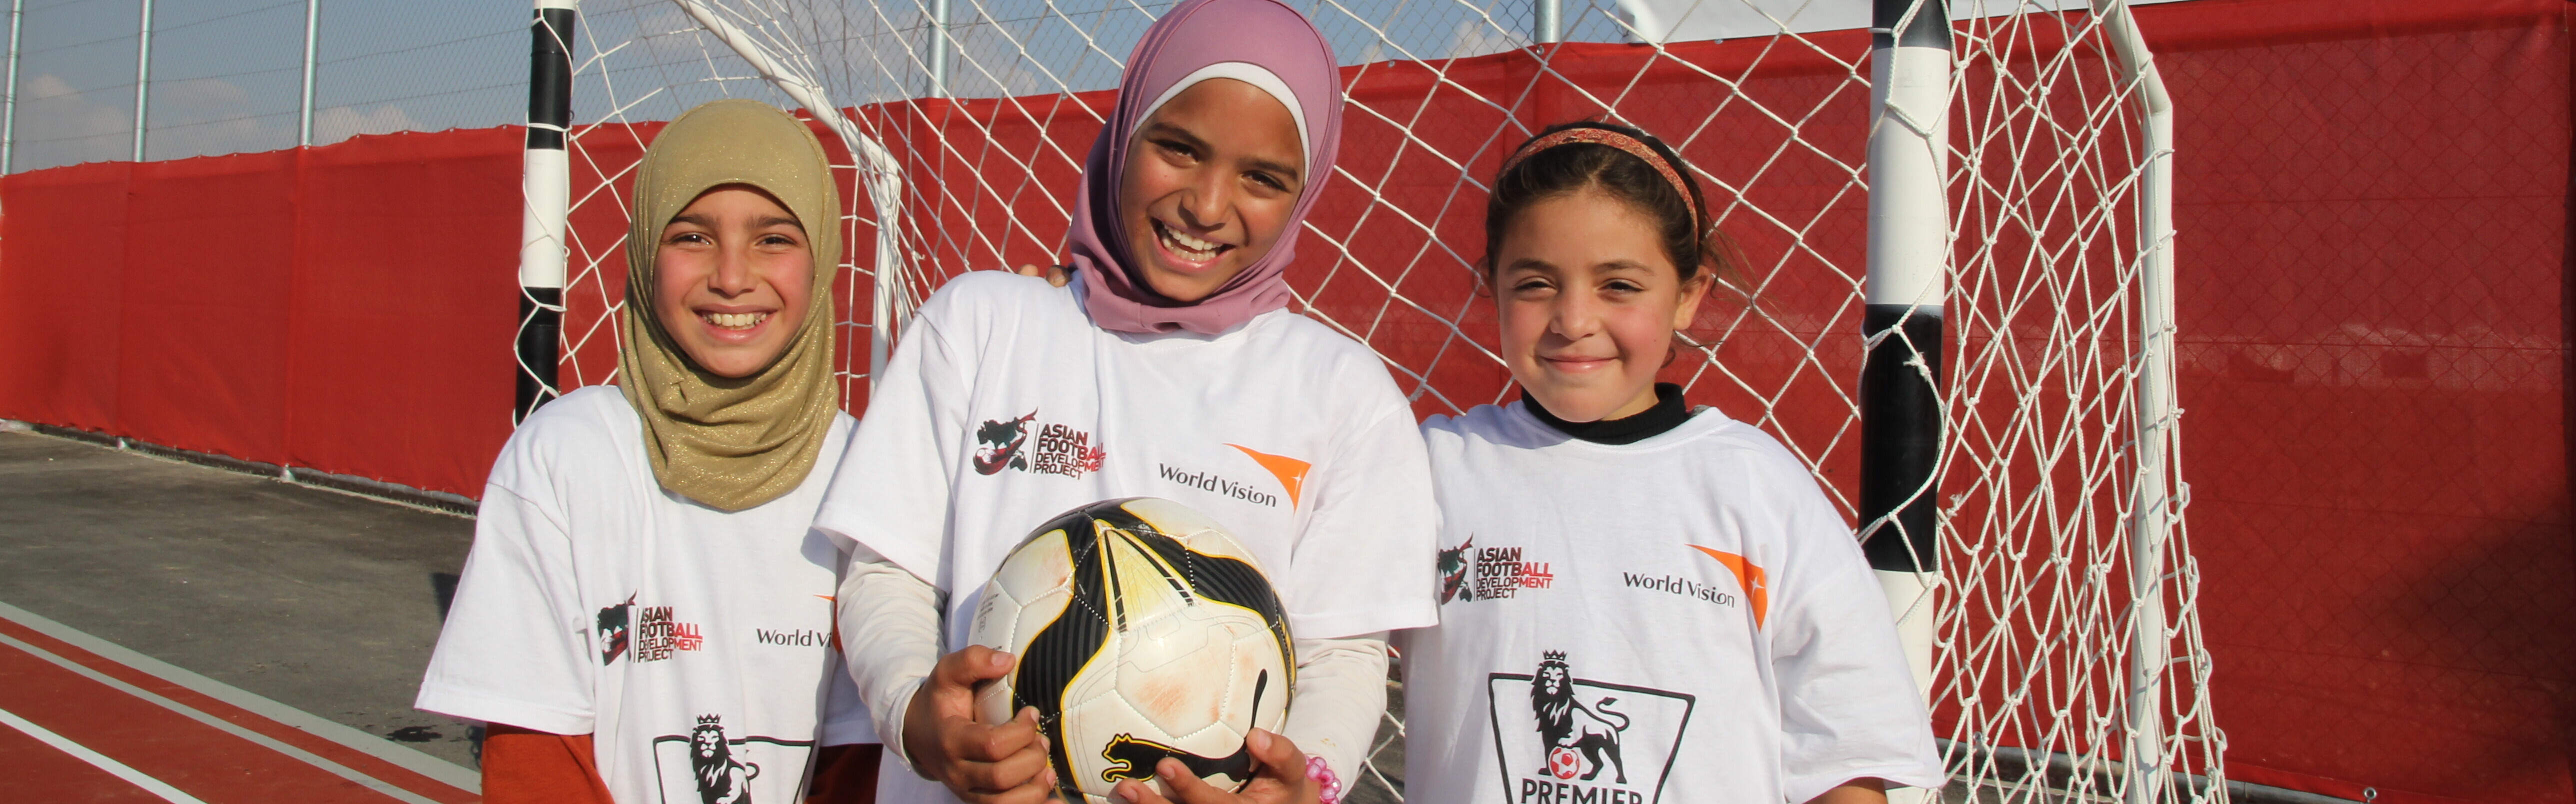 Im Fußballprojekt von World Vision können Kinder Fußball spielen und zumindest für kurze Zeit ihre Alltagssorgen im Flüchtlingslager vergessen